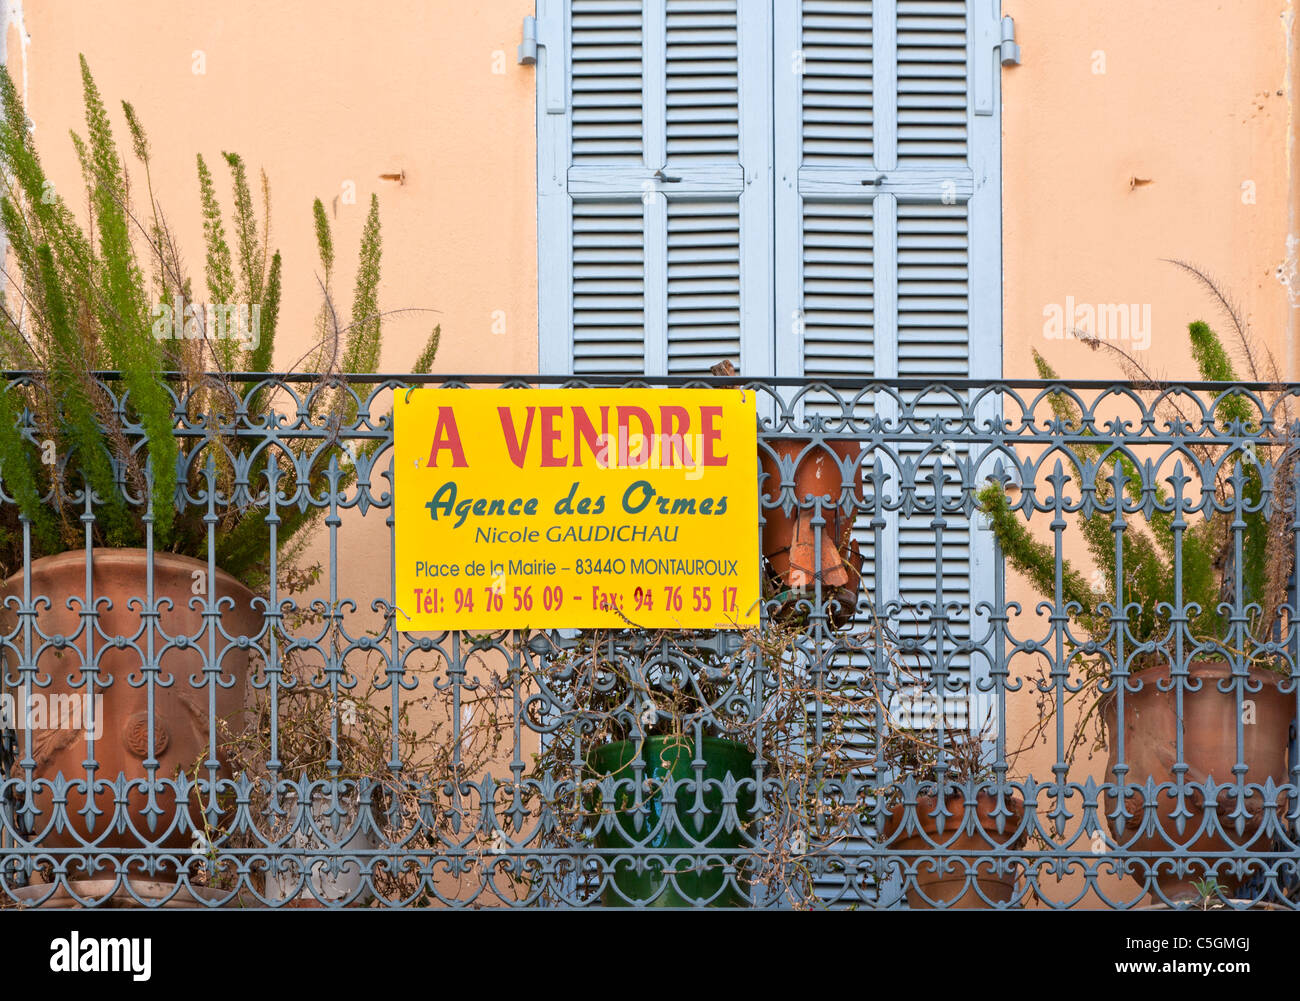 A vendre maison à signer, Seillans, Provence, France Banque D'Images